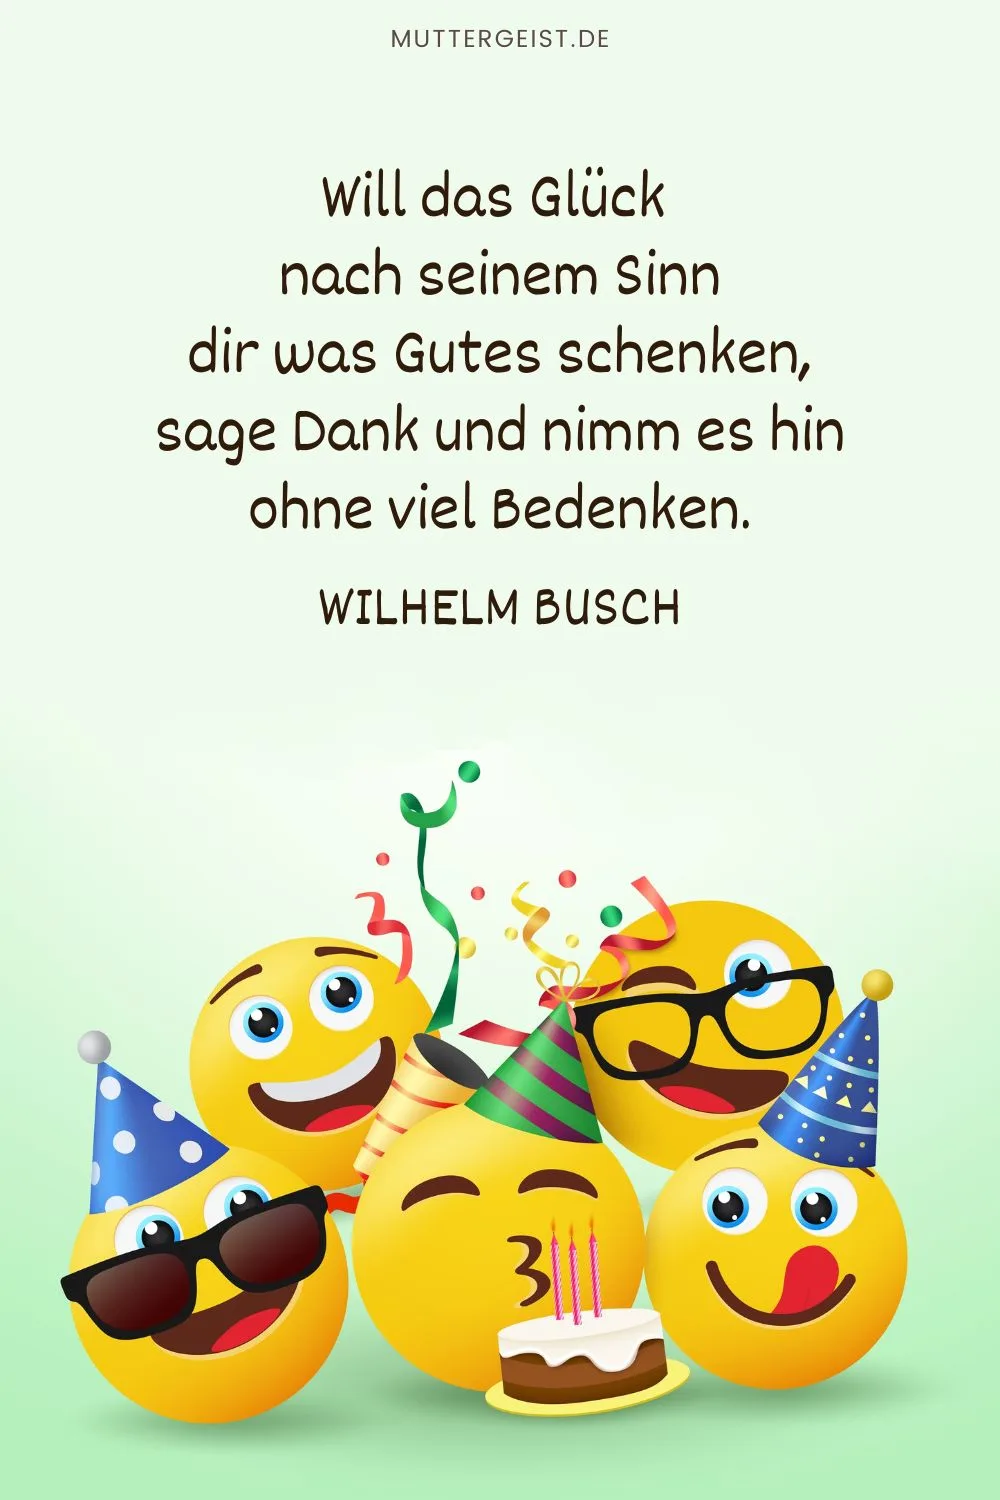 Geburtstagsglückwunsch in Wilhelm Buschs Reim: „Will das Glück nach seinem Sinn dir was Gutes schenken, sage Dank und nimm es hin ohne viel Bedenken.“